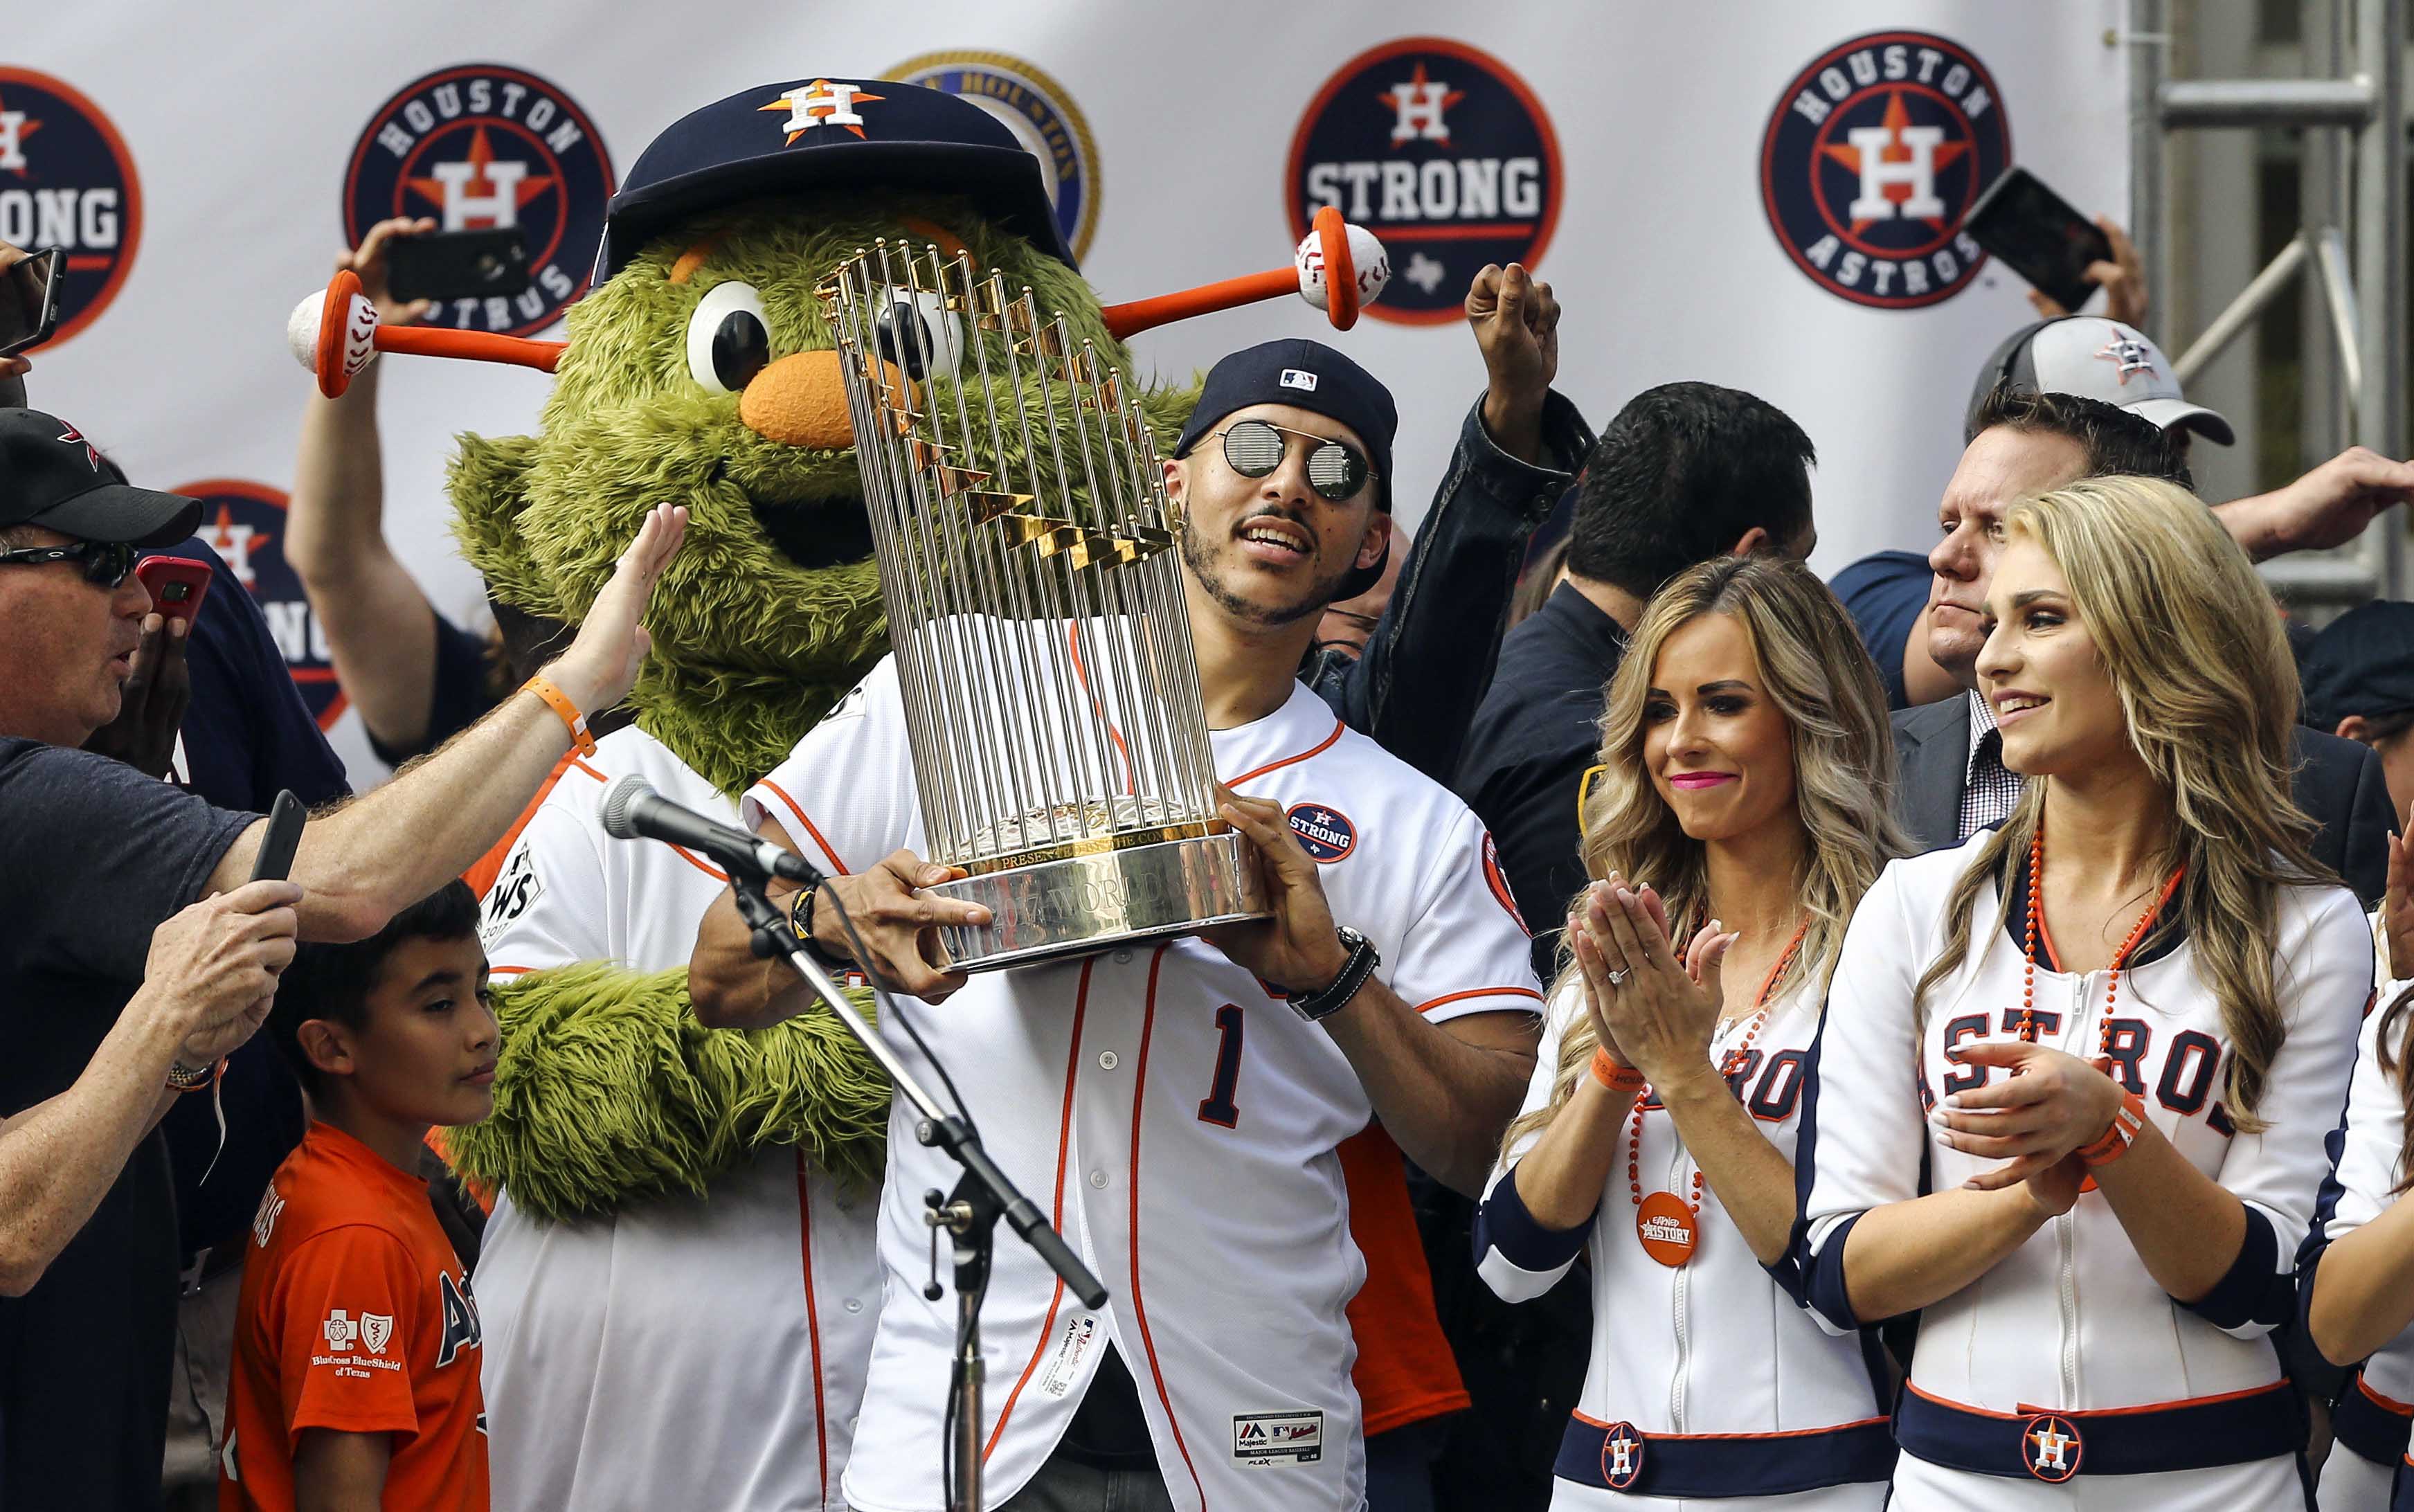 Houston Astros set to kick off championship trophy tour